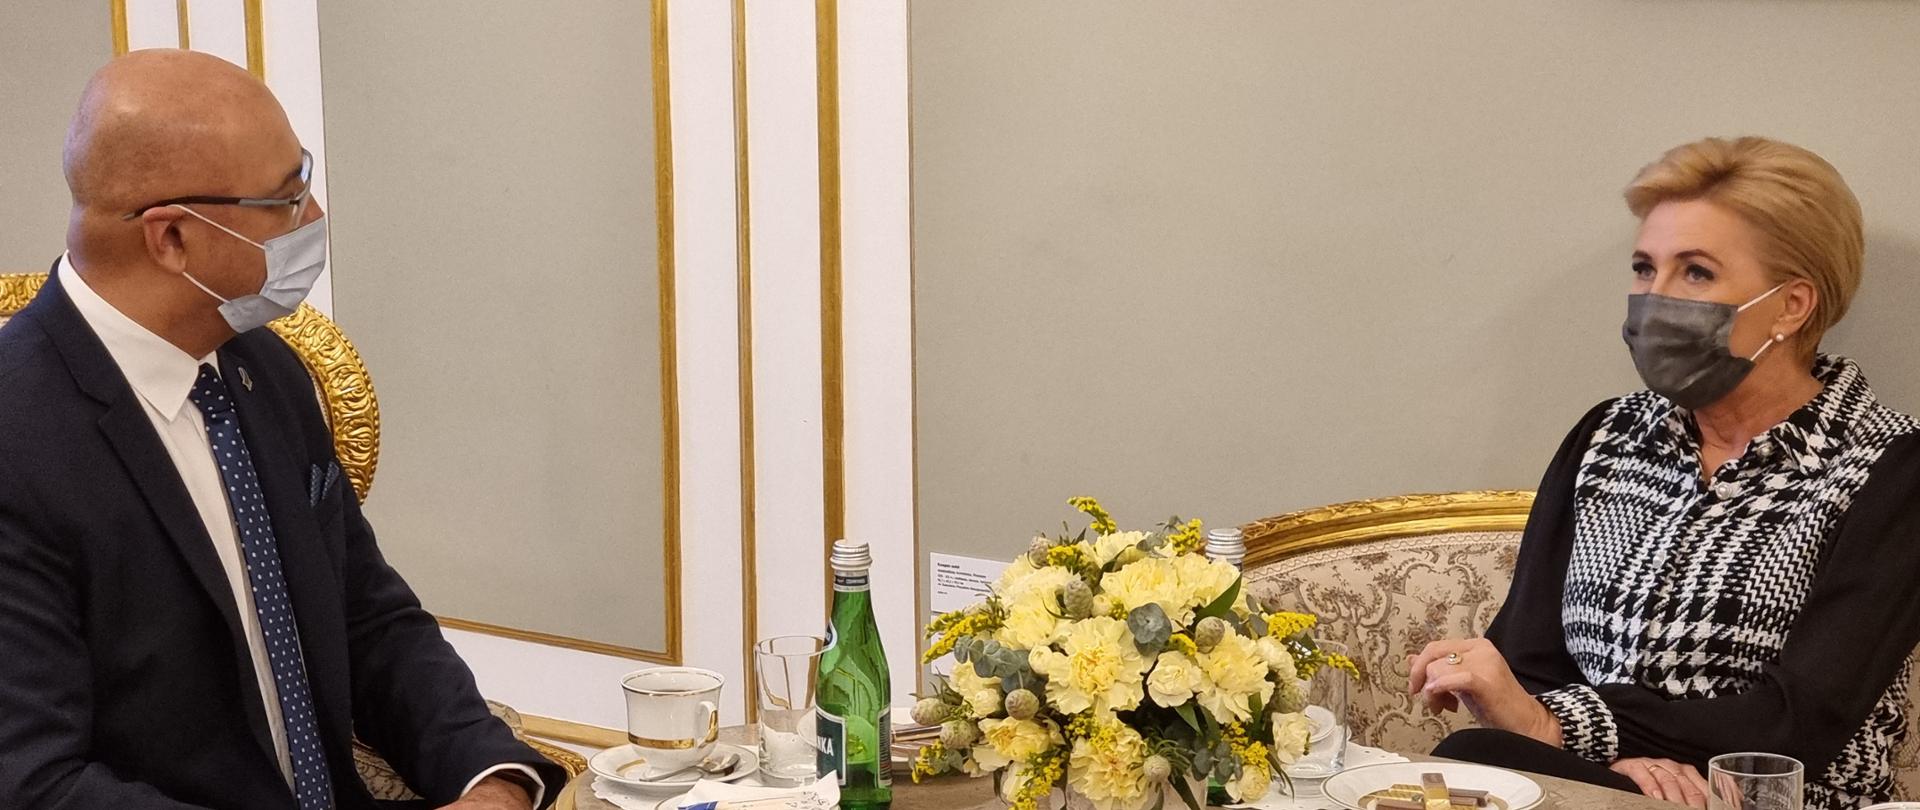 Główny Inspektor Transportu Drogowego Alvin Gajadhur wraz z Małżonką Prezydenta RP Agatą Kornhauser-Dudą siedzą przy zabytkowym stoliku, na którym stoi wazon z kwiatami. Główny Inspektor trzyma złożone dłonie na kolanach i z uwagą słucha słów Pierwszej Damy.